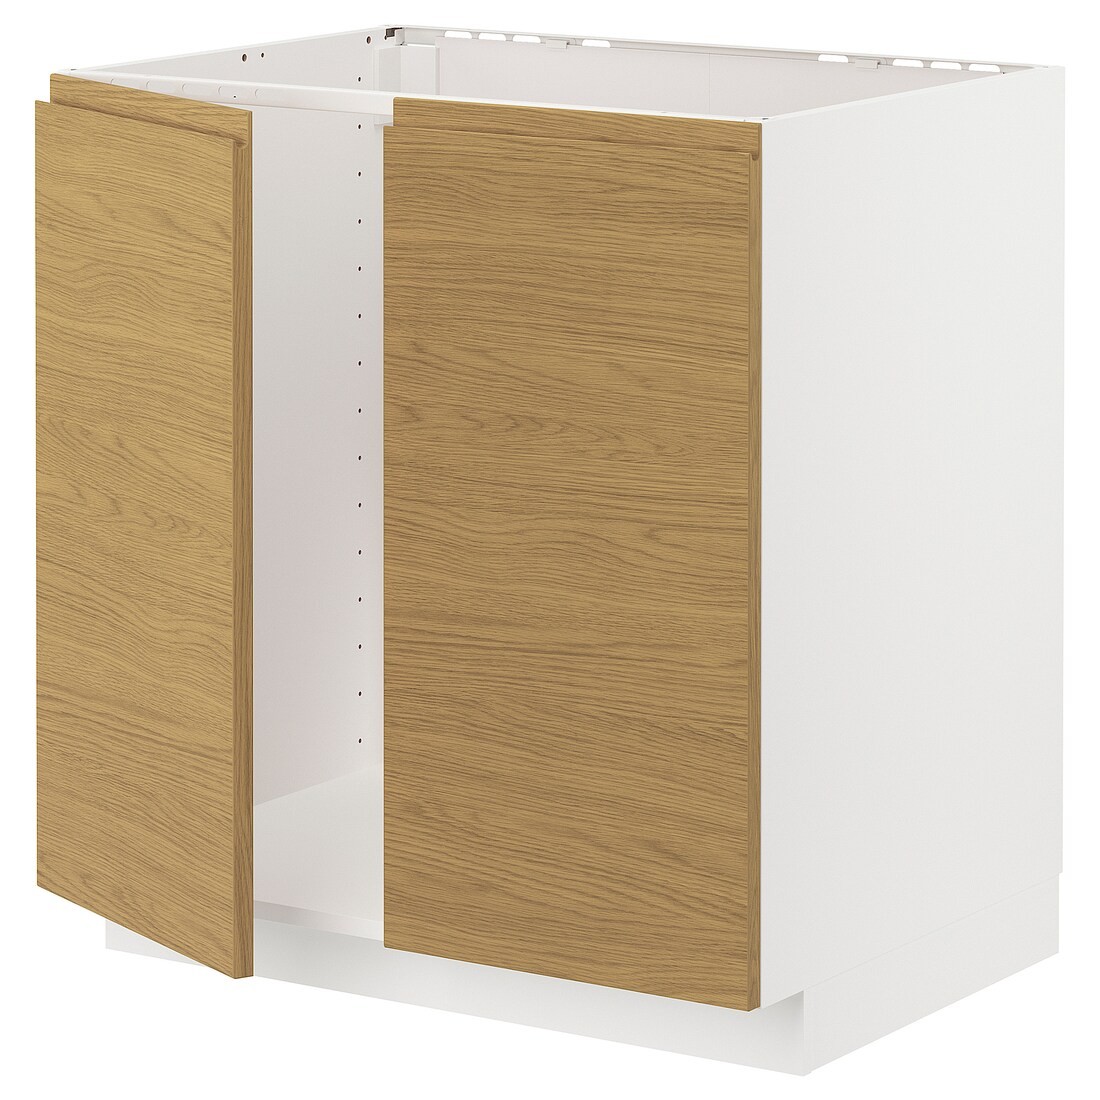 IKEA METOD підлогова шафа для мийки+2 дверцят, білий / Voxtorp імітація дуб, 80x60 см 19538675 195.386.75